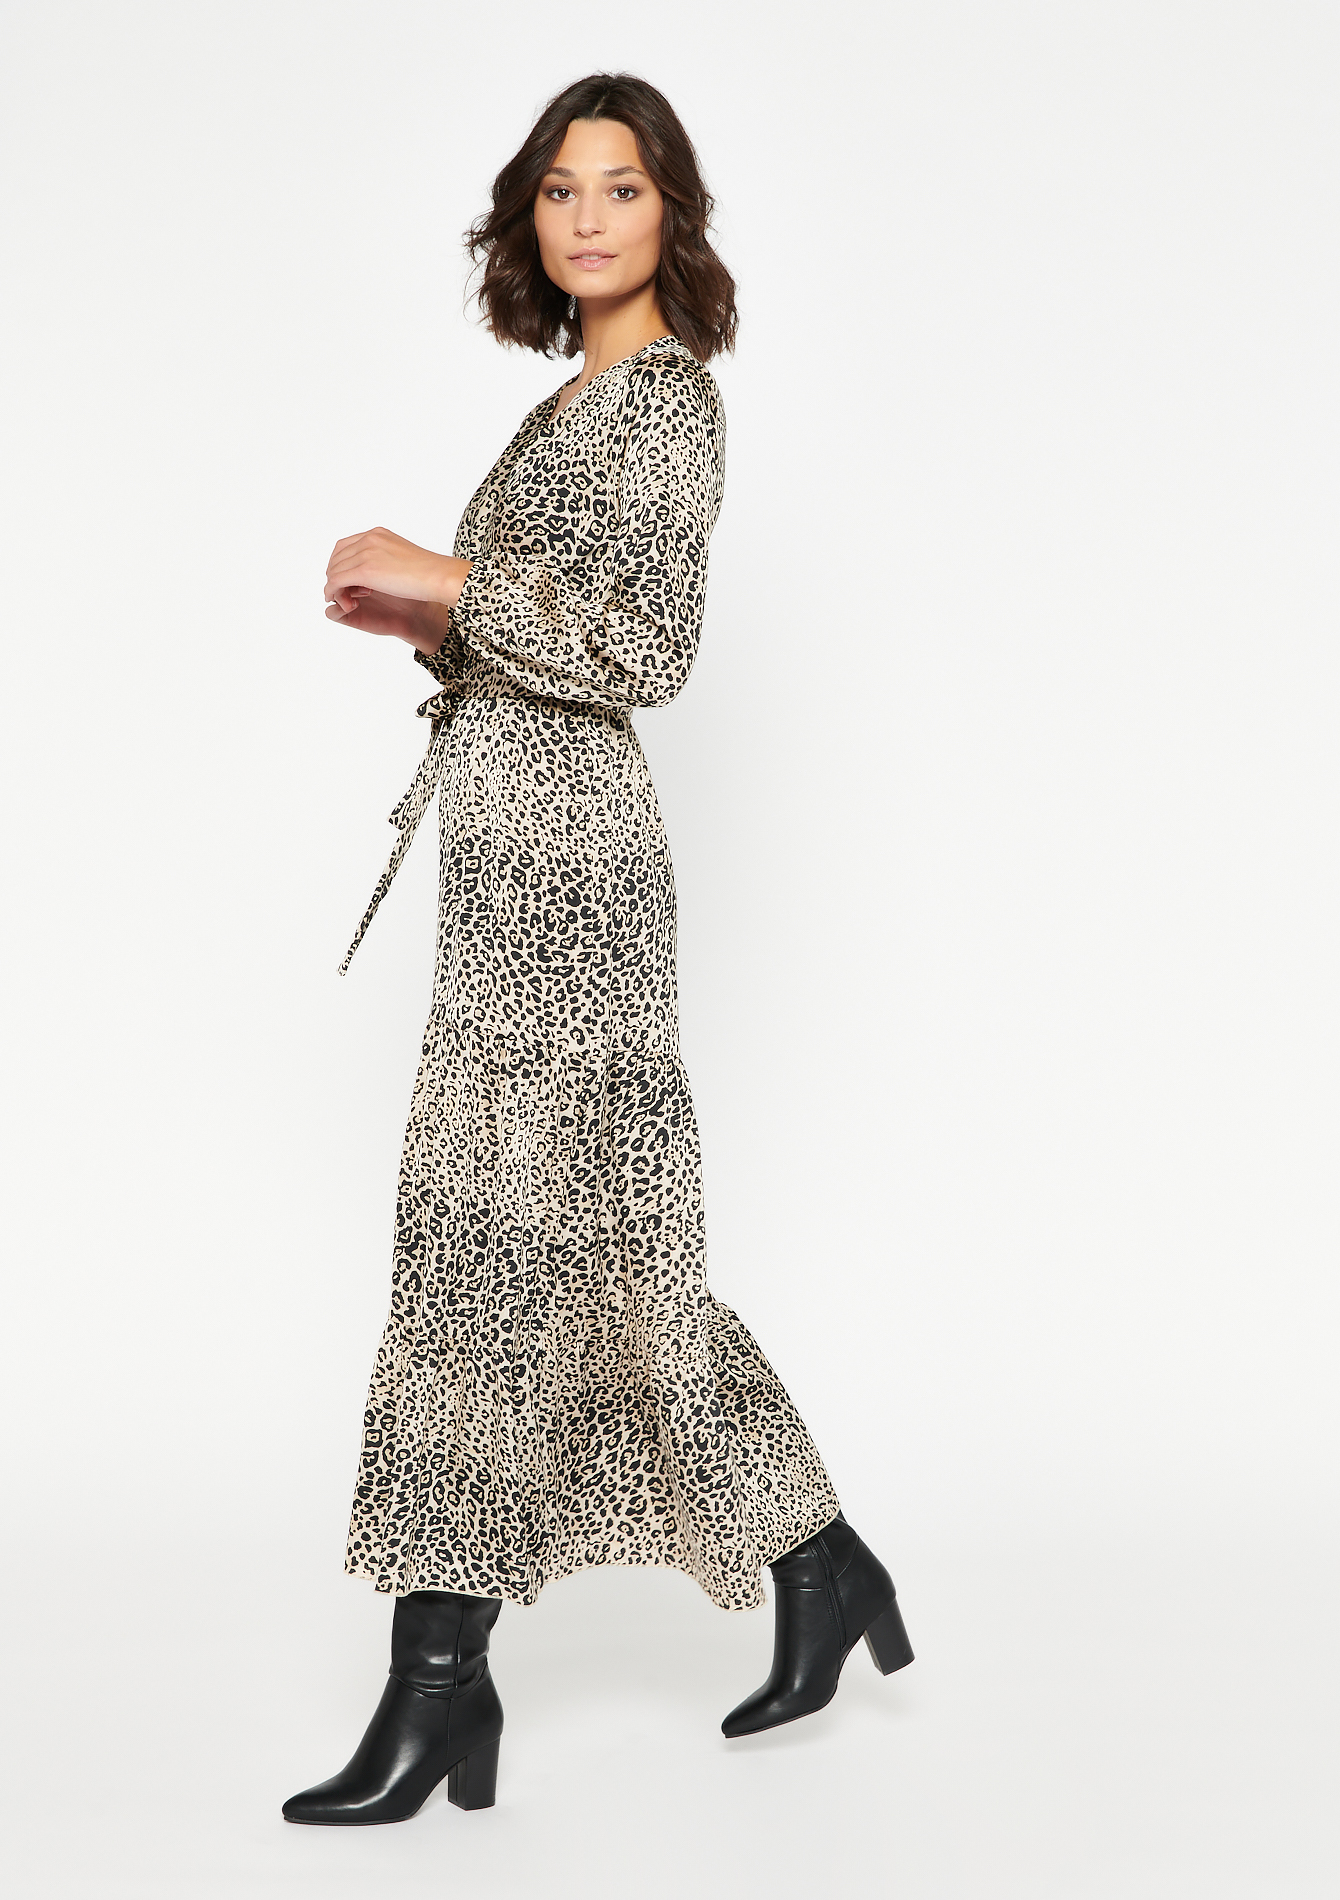 Zuidelijk geschiedenis camouflage Maxi jurk met luipaardprint - LolaLiza